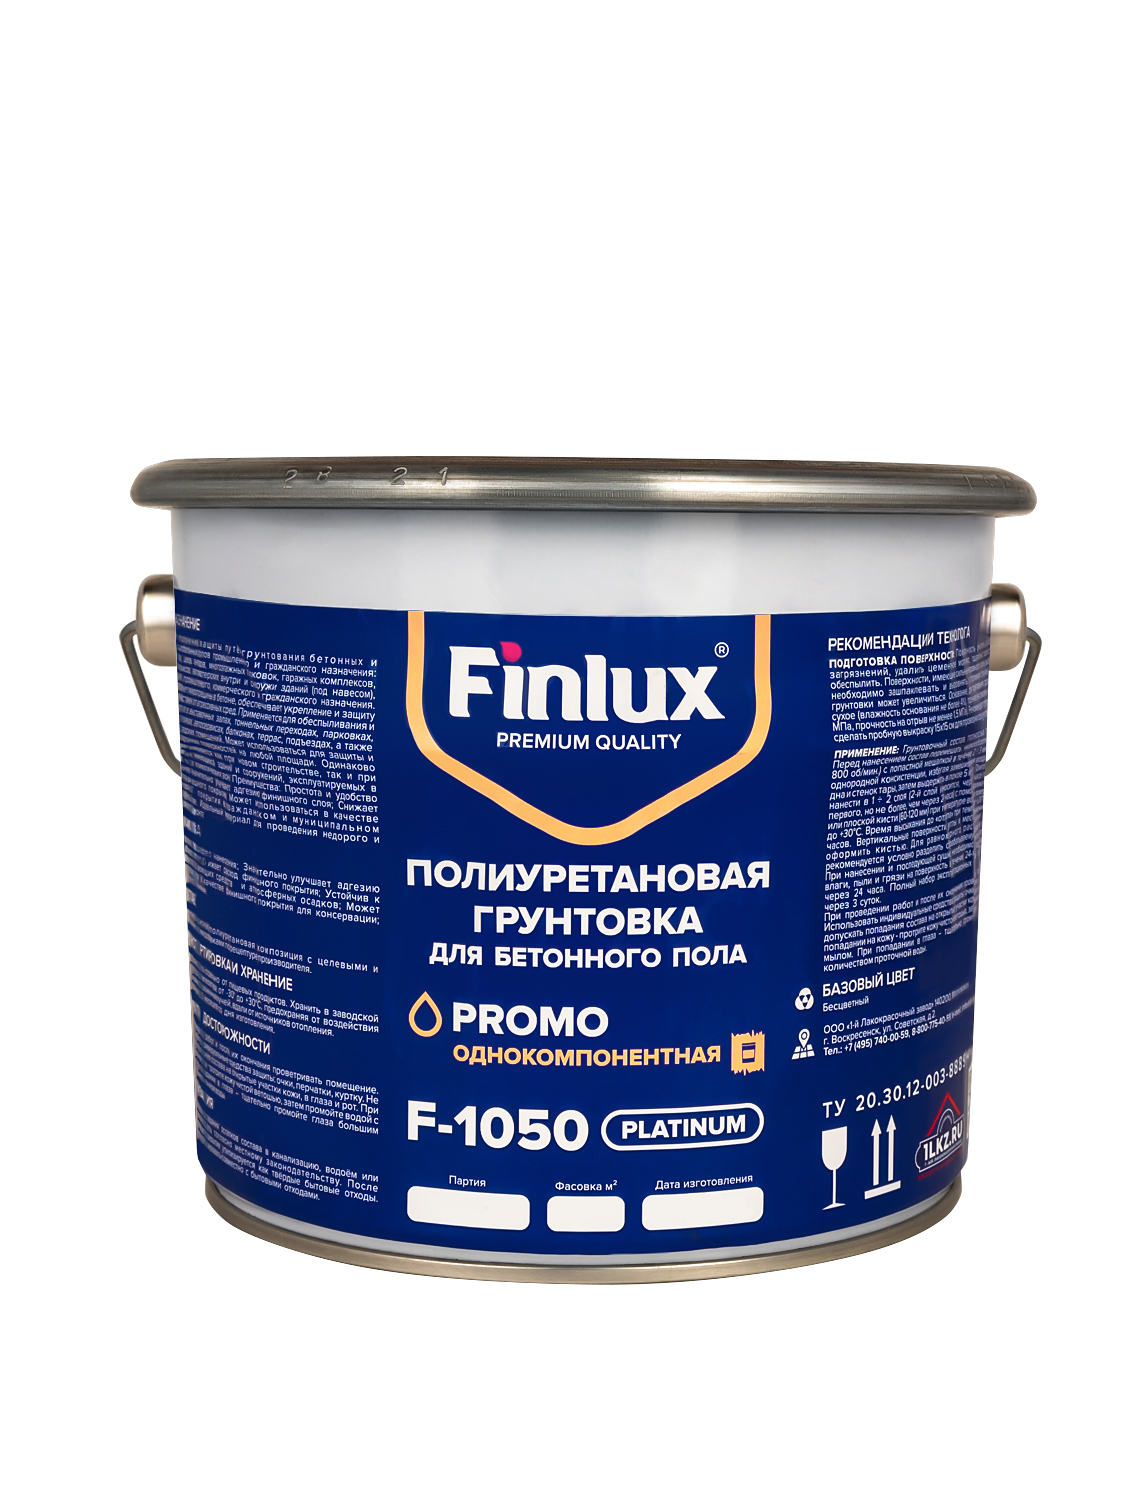 Полиуретановая грунтовка для бетонного пола Finlux F-1050Platinum 10 кв.м грунтовка алкидная быстросохнущая finlux гф 021 красно коричневый 5 кг